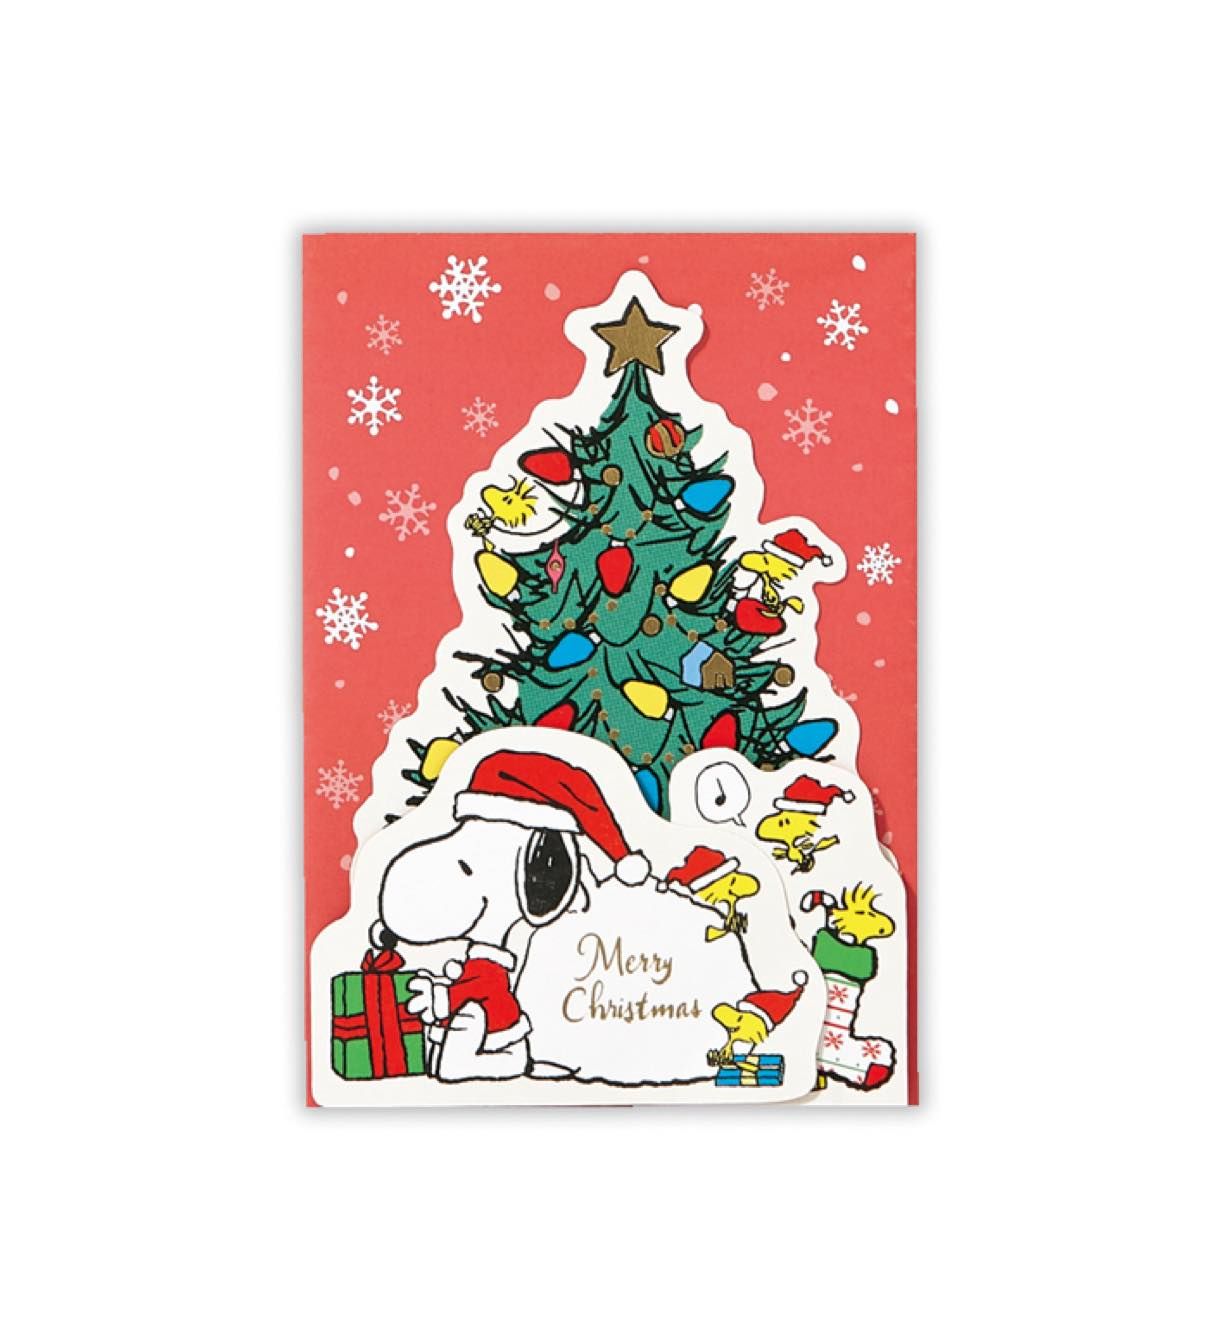 【即日発送】海外限定 スヌーピー ホールマーク社製 クリスマスツリー プレゼント